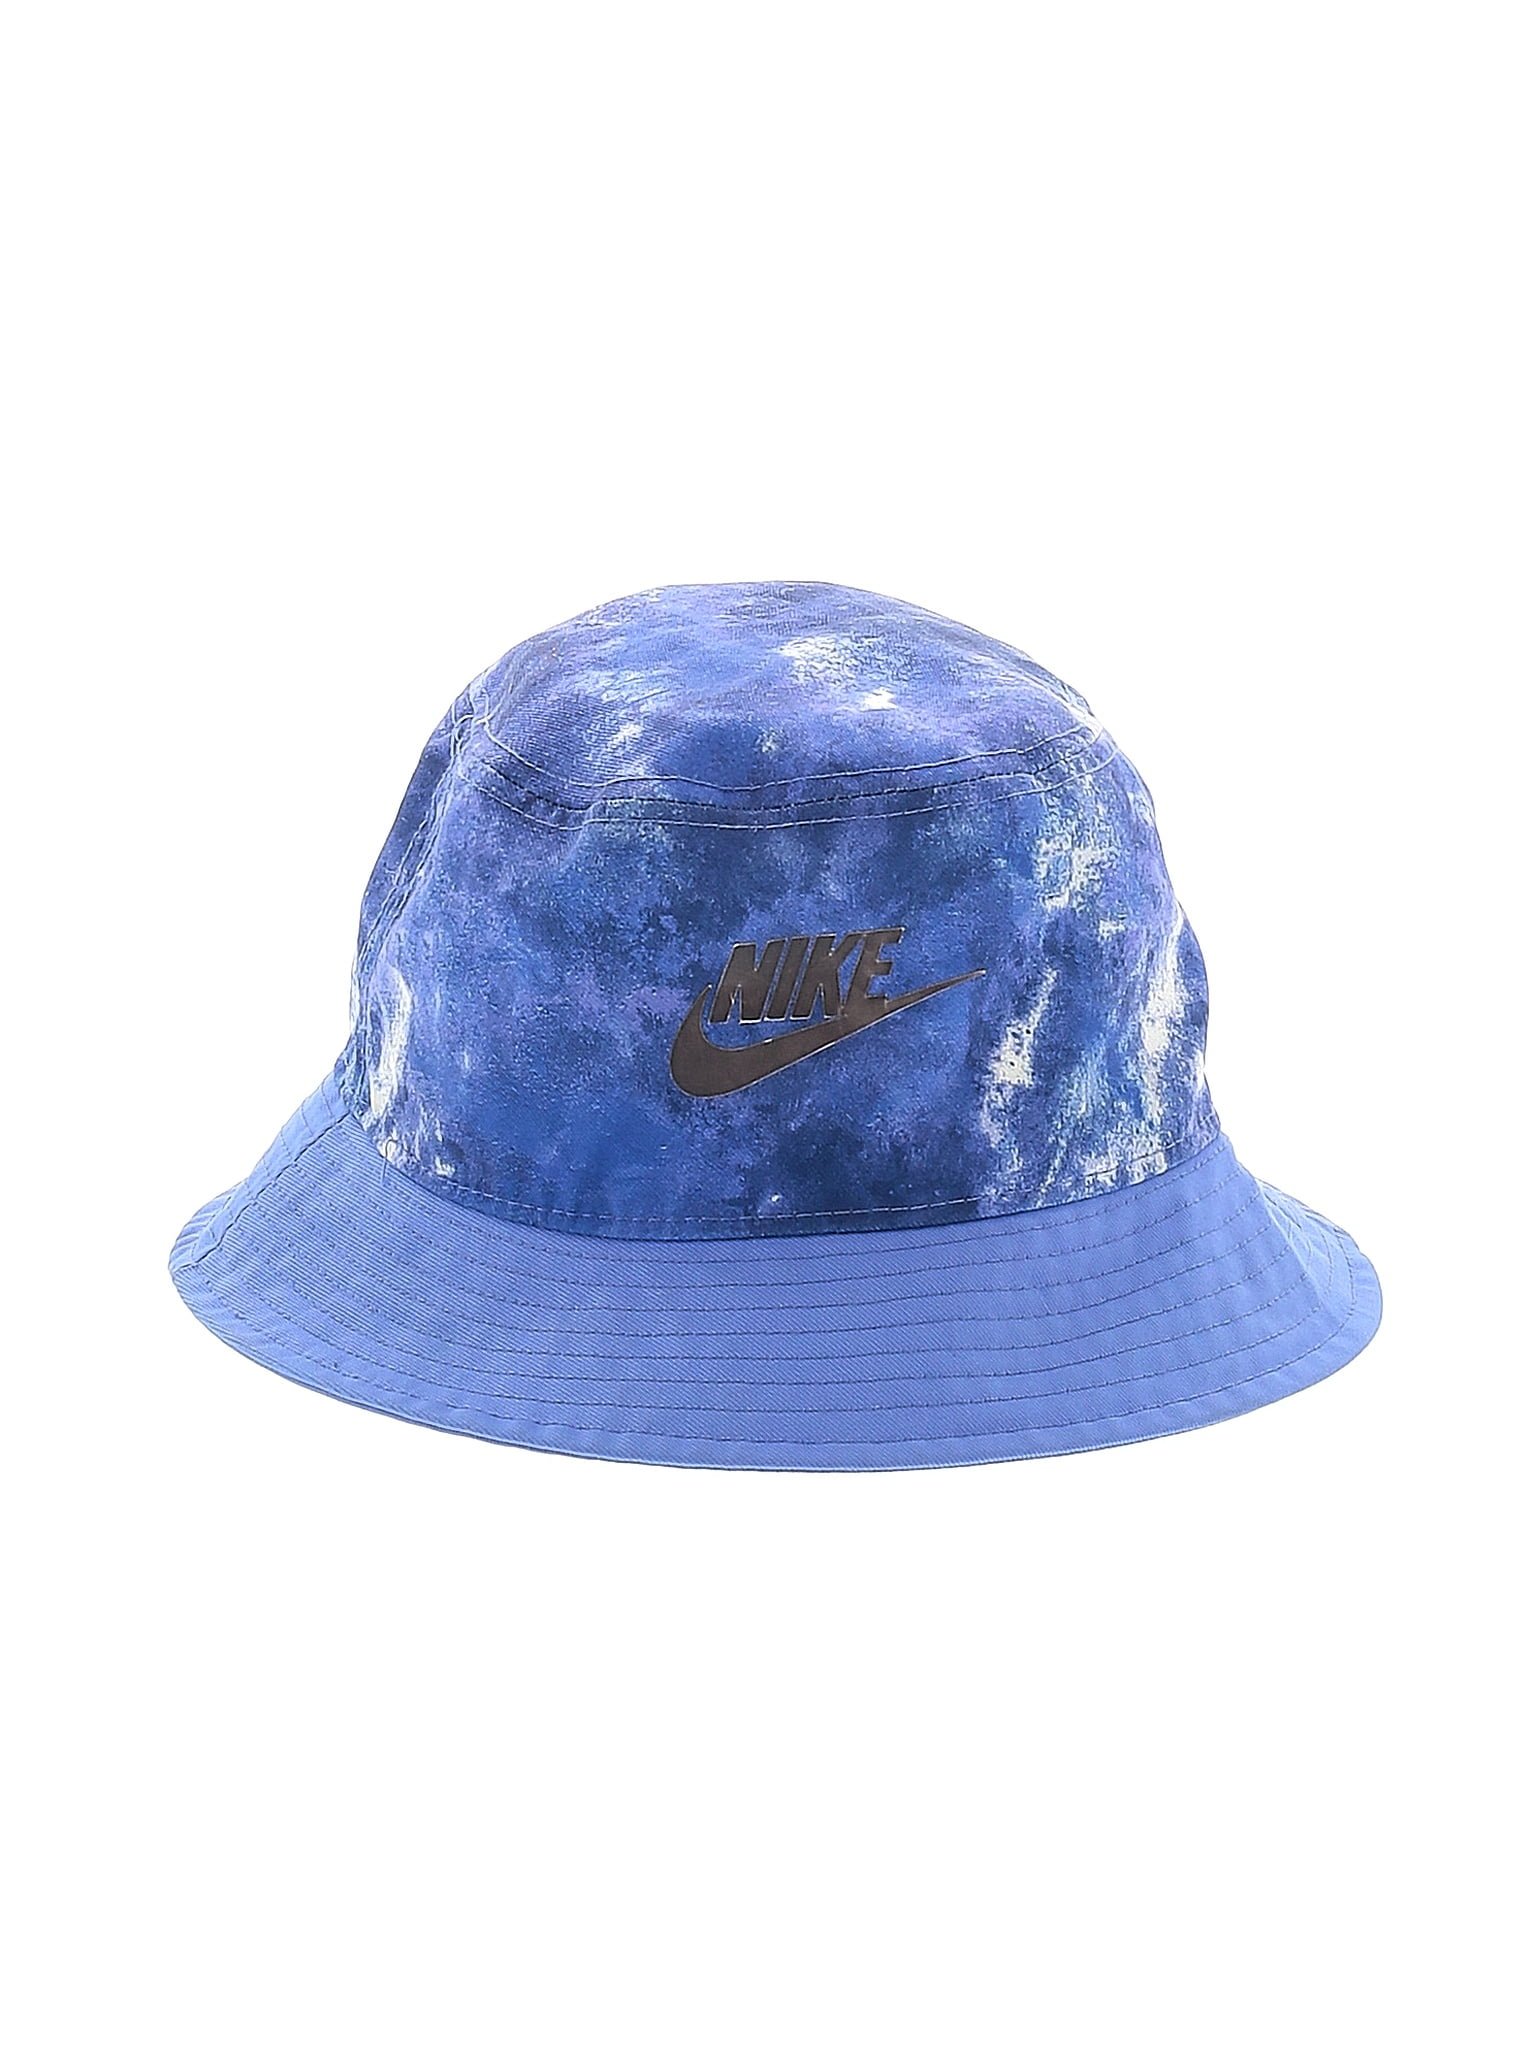 Nike Color Block Blue Sun Hat Size Med - Lg - 52% off